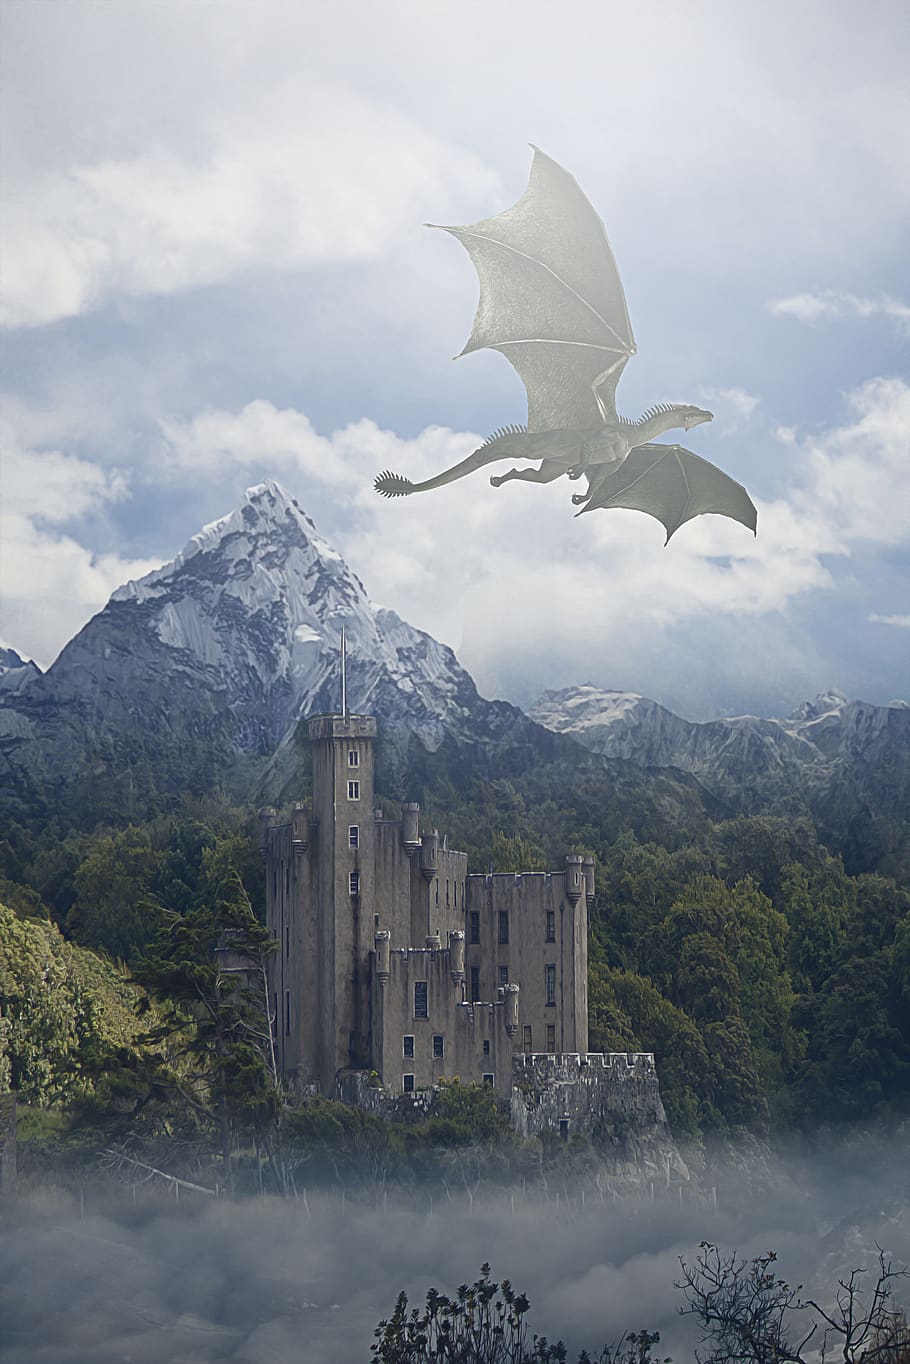 dragão, voando, céu, nuvens, montanhas, árvores, castelo, fantasia, paisagem, paisagem fantástica